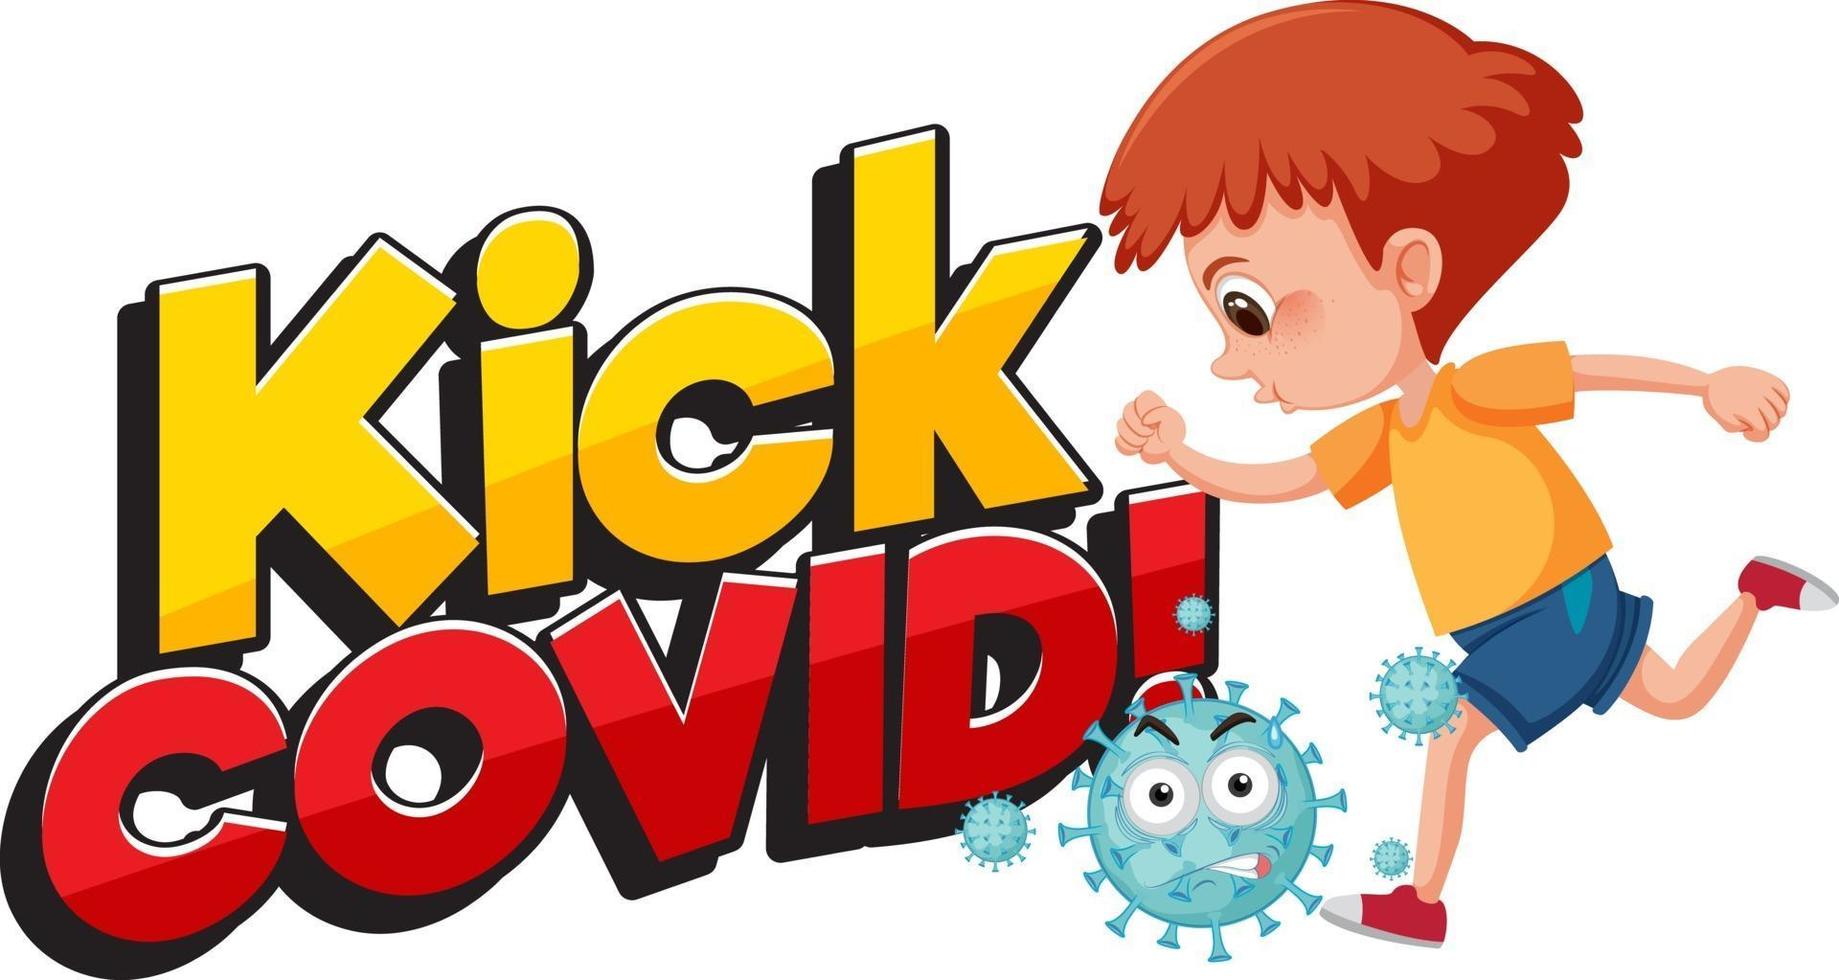 Kick Covid Font mit einem Jungen, der versucht, Coronavirus-Zeichentrickfigur zu treten vektor